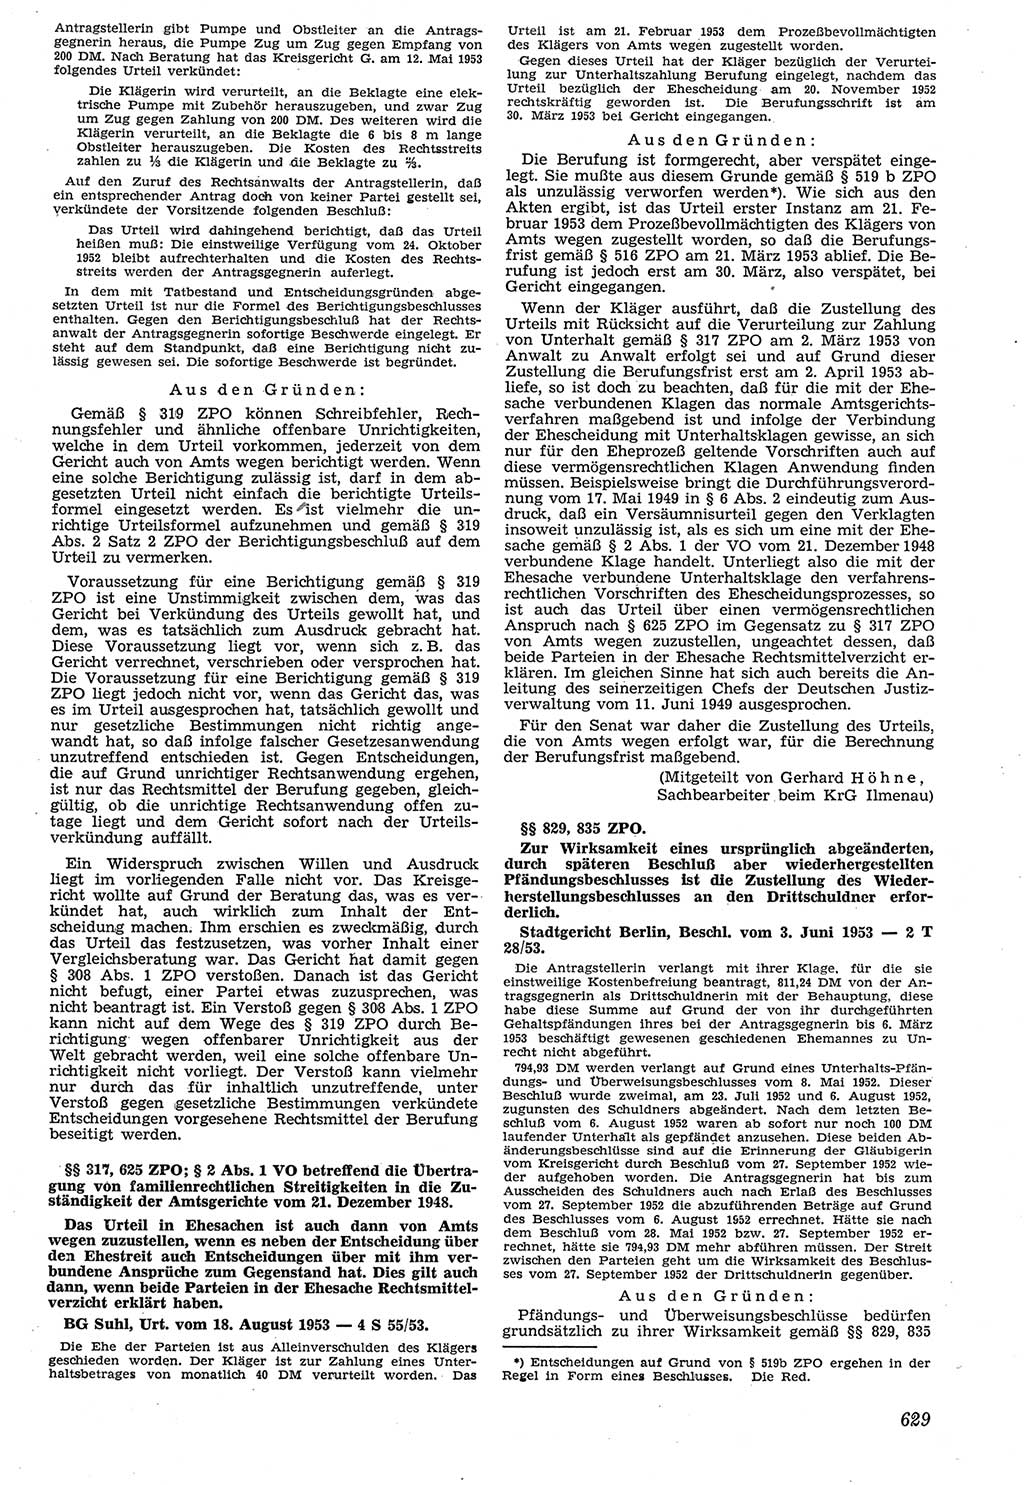 Neue Justiz (NJ), Zeitschrift für Recht und Rechtswissenschaft [Deutsche Demokratische Republik (DDR)], 7. Jahrgang 1953, Seite 629 (NJ DDR 1953, S. 629)